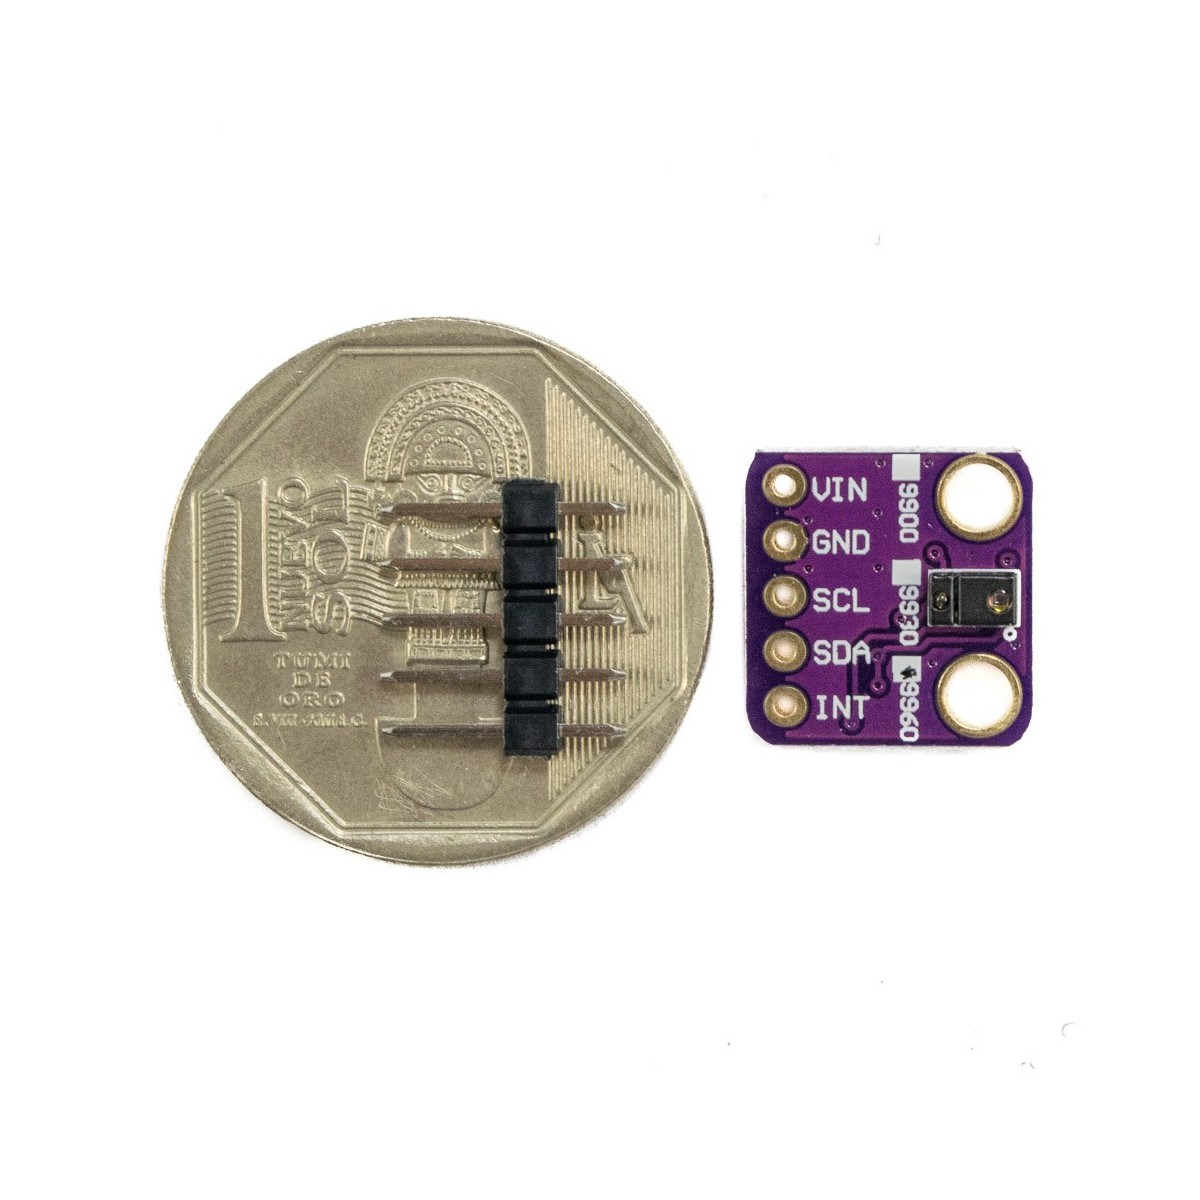 GY-9960LLC APDS-9960 RGB y módulo de sensor de gestos Sensor de infrarrojos de la tarjeta de ruptura I2C para Arduino 